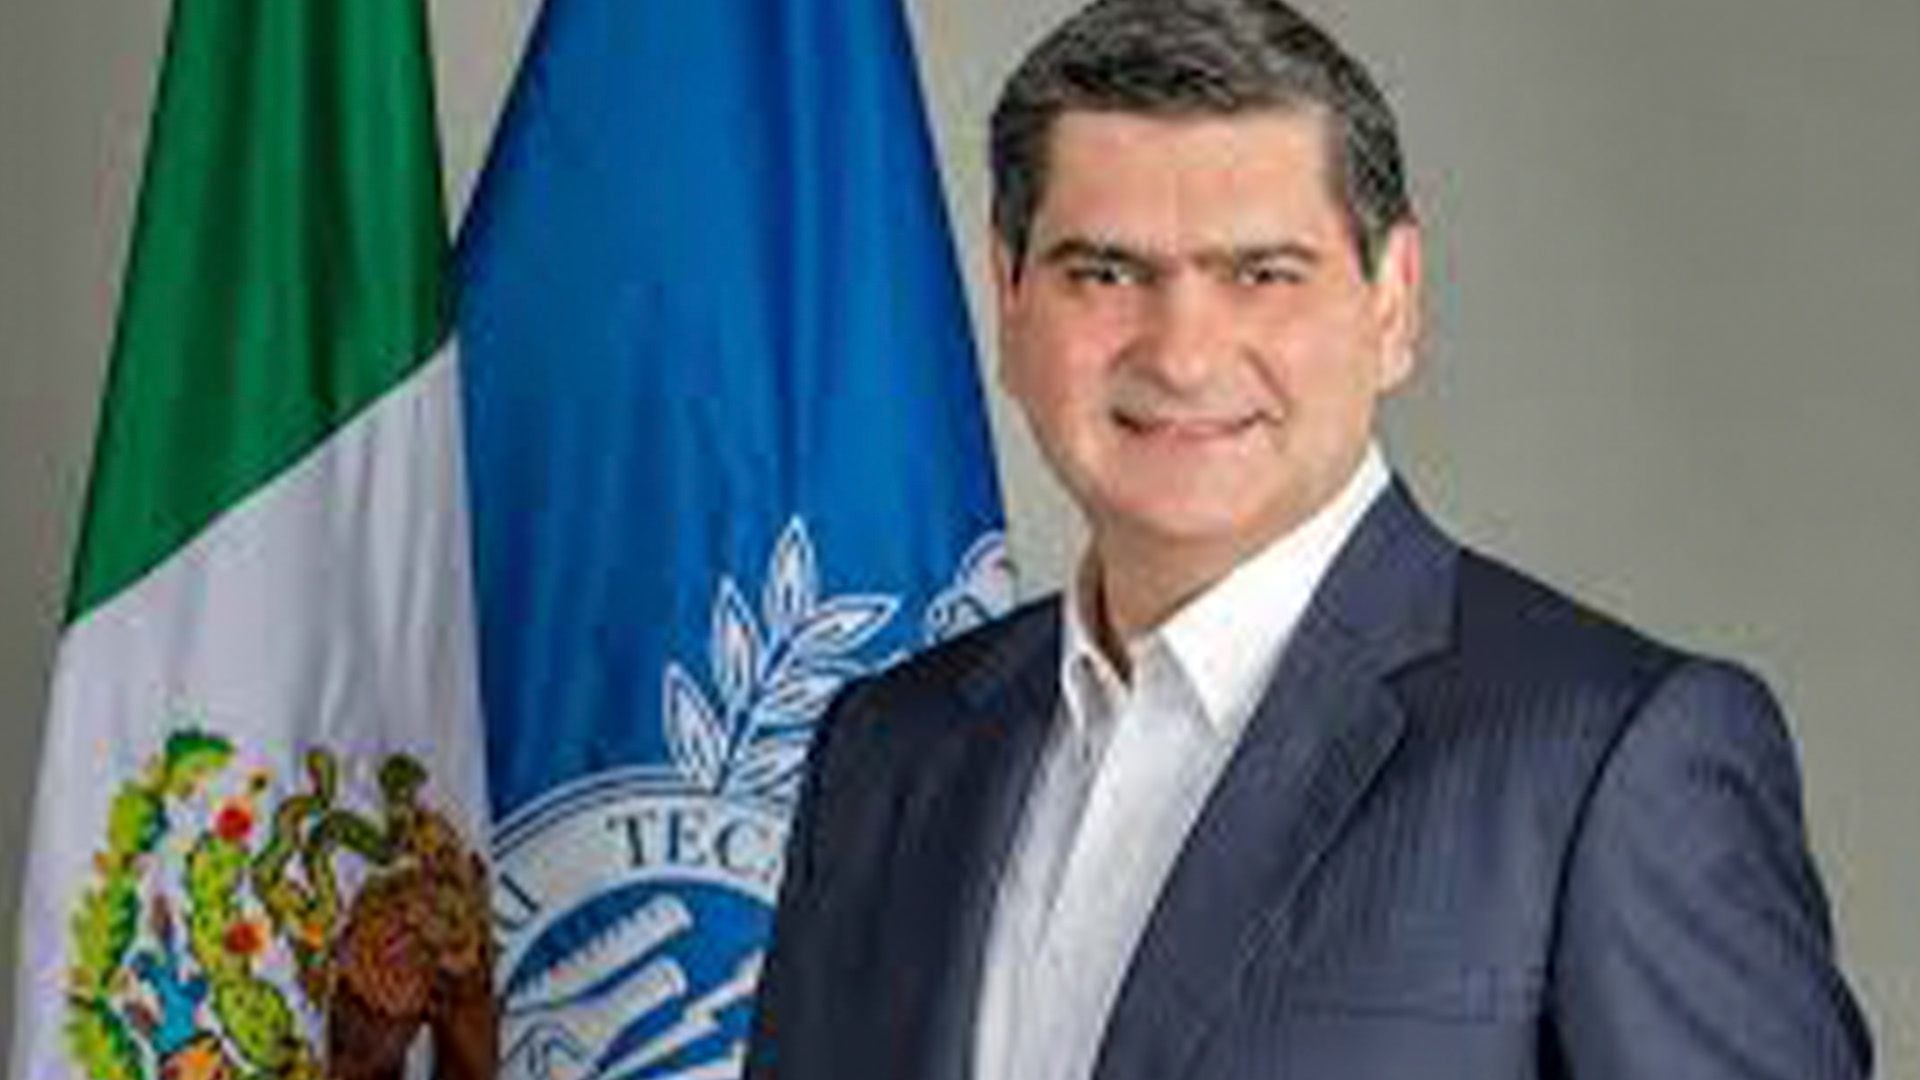 El rector del Tec de Monterrey, David Garza Salazar
Tec de Monterrey, Universitas 21, universidades, David Garza Salazar